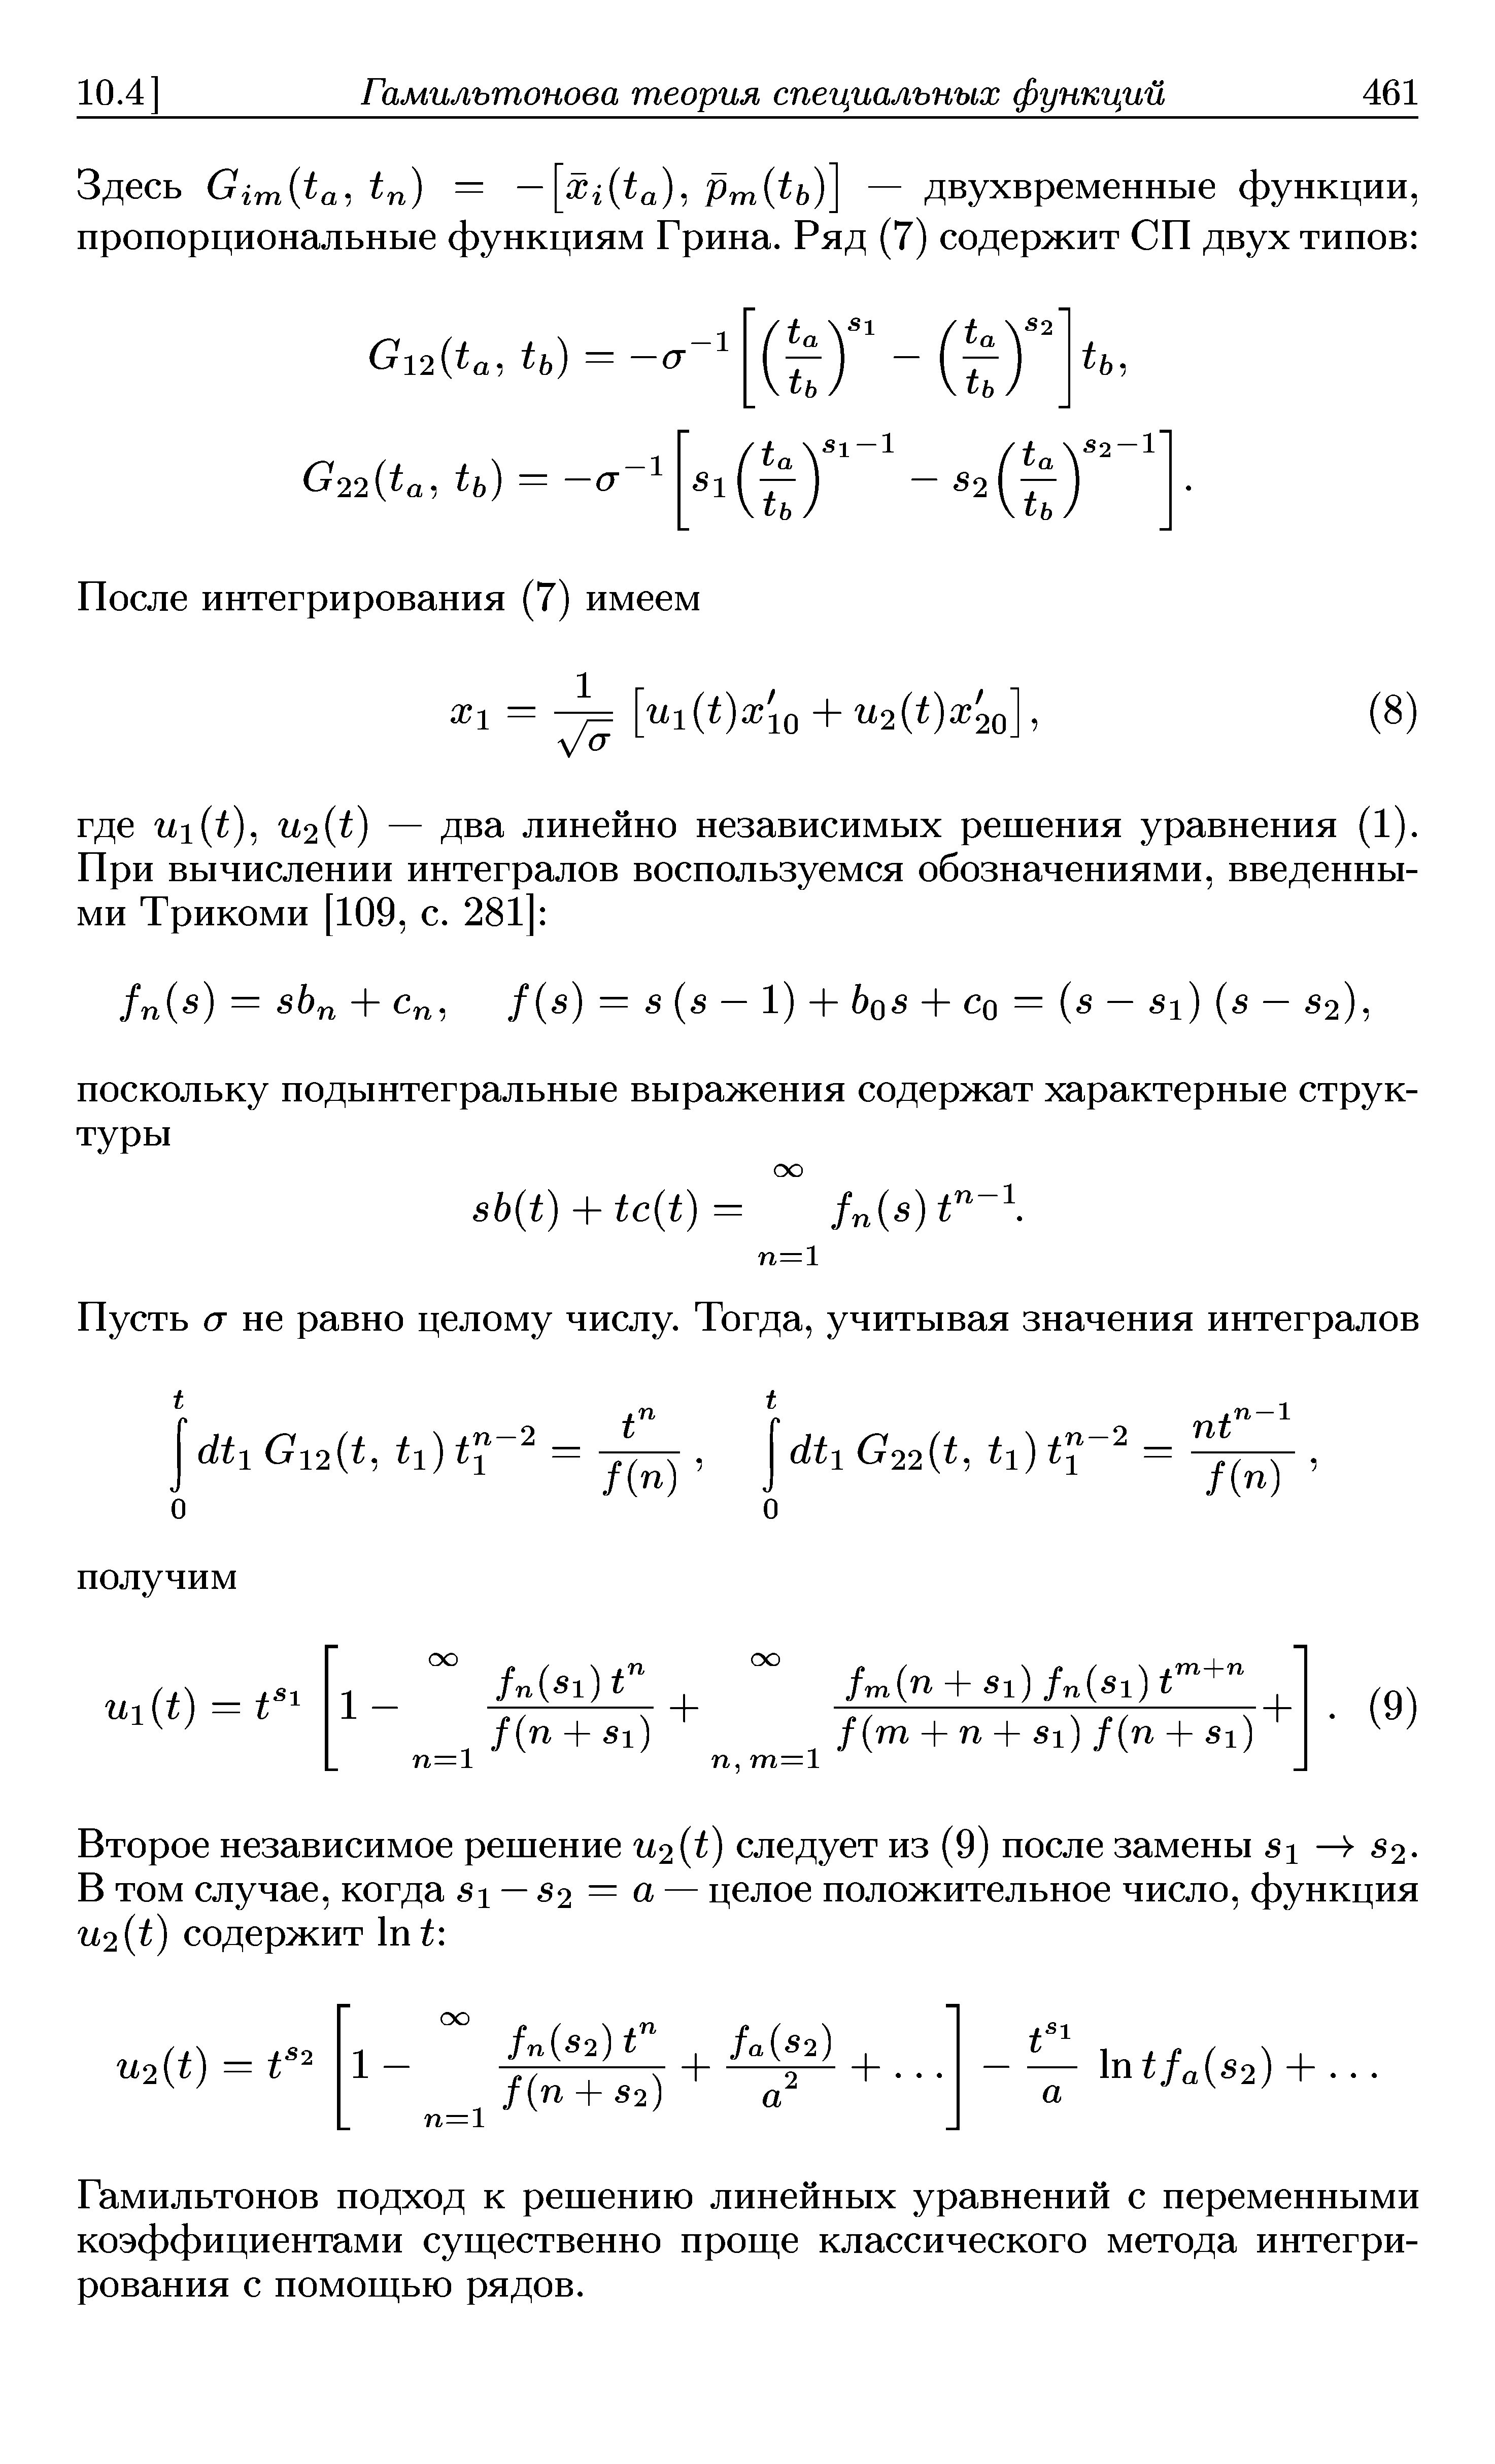 Гамильтонов подход к решению линейных уравнений с переменными коэффициентами суш ественно прош е классического метода интегрирования с помош ью рядов.
